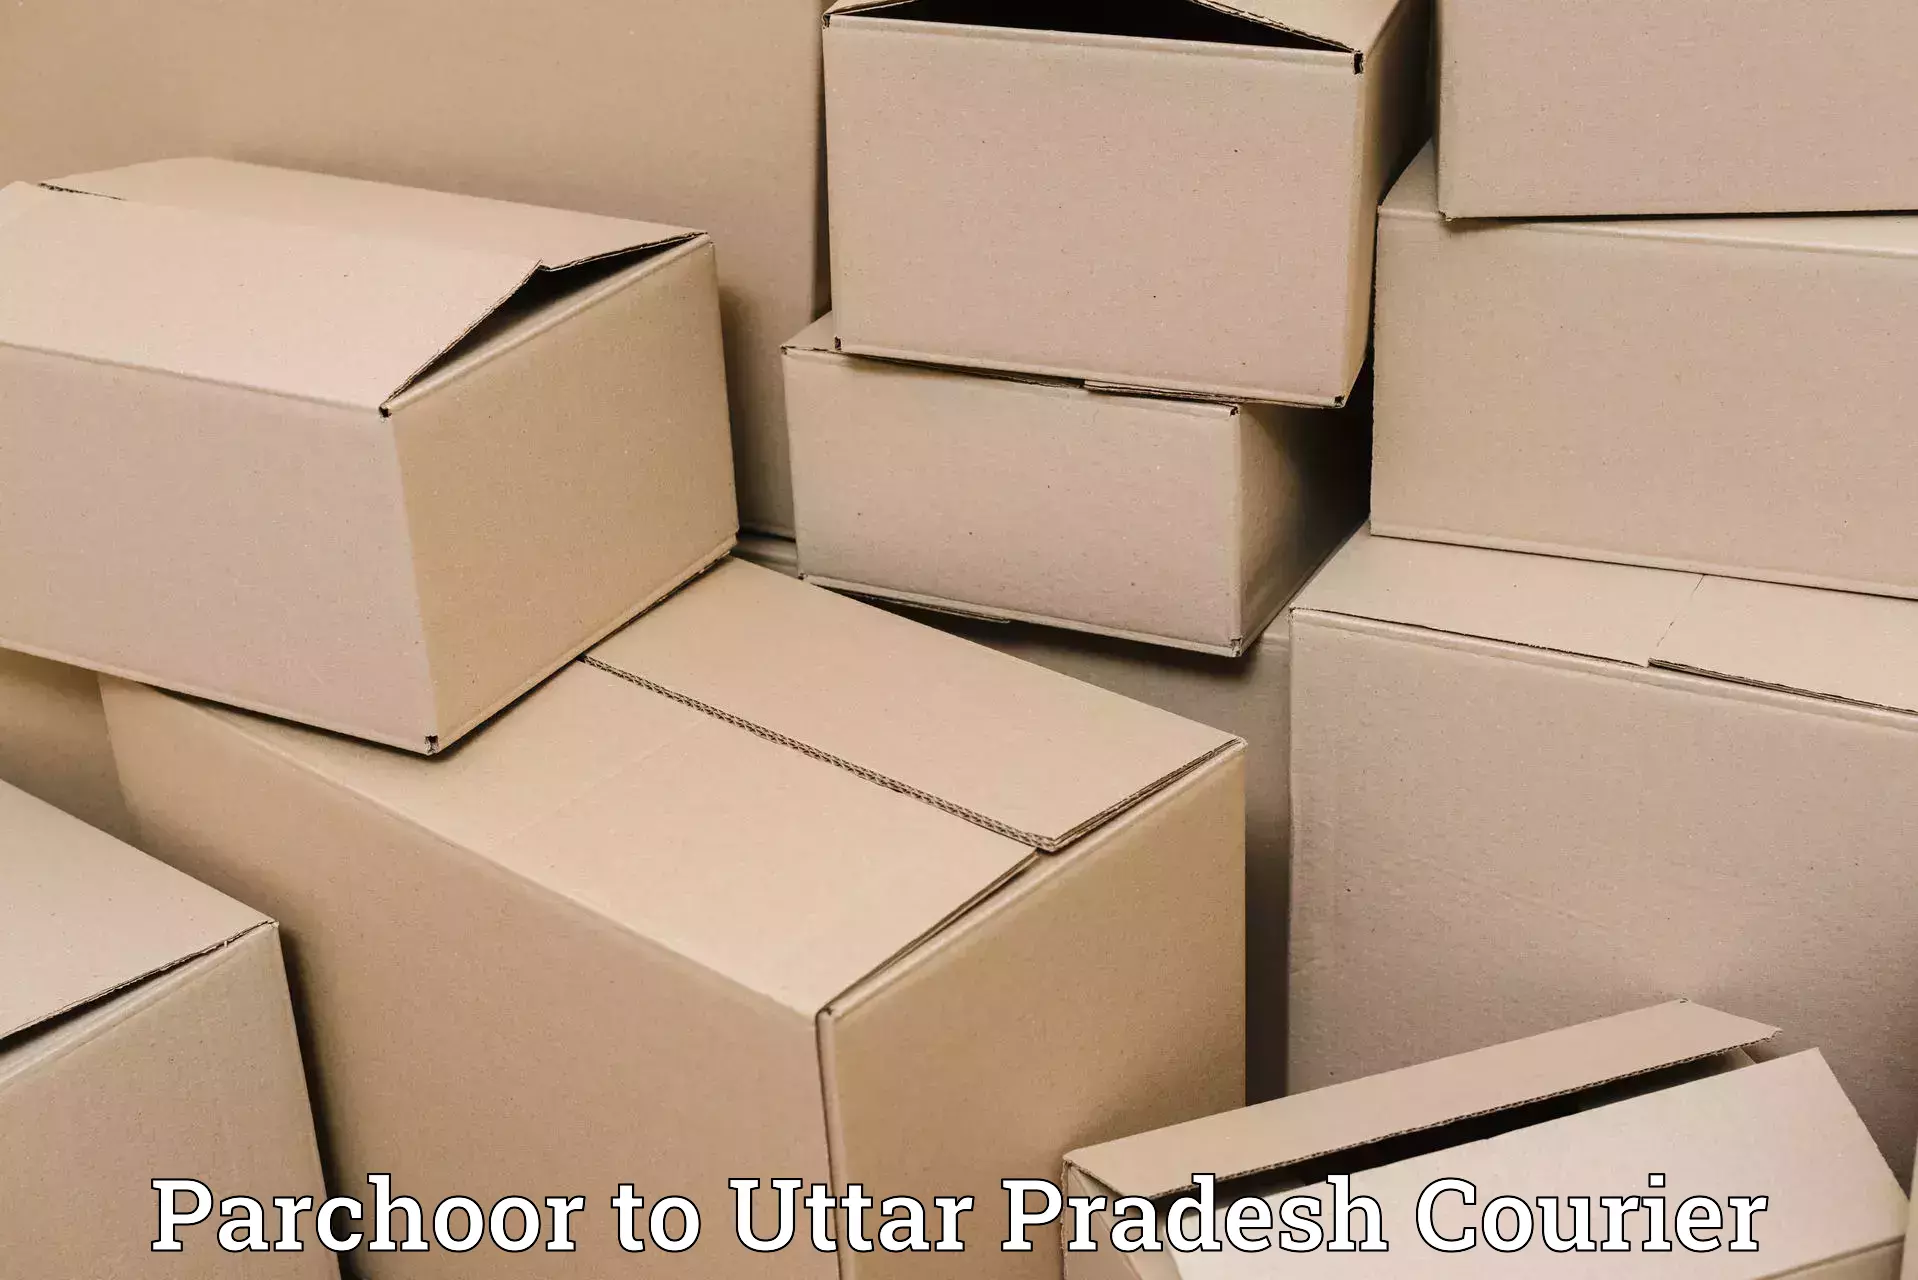 Smart courier technologies Parchoor to Kalpi